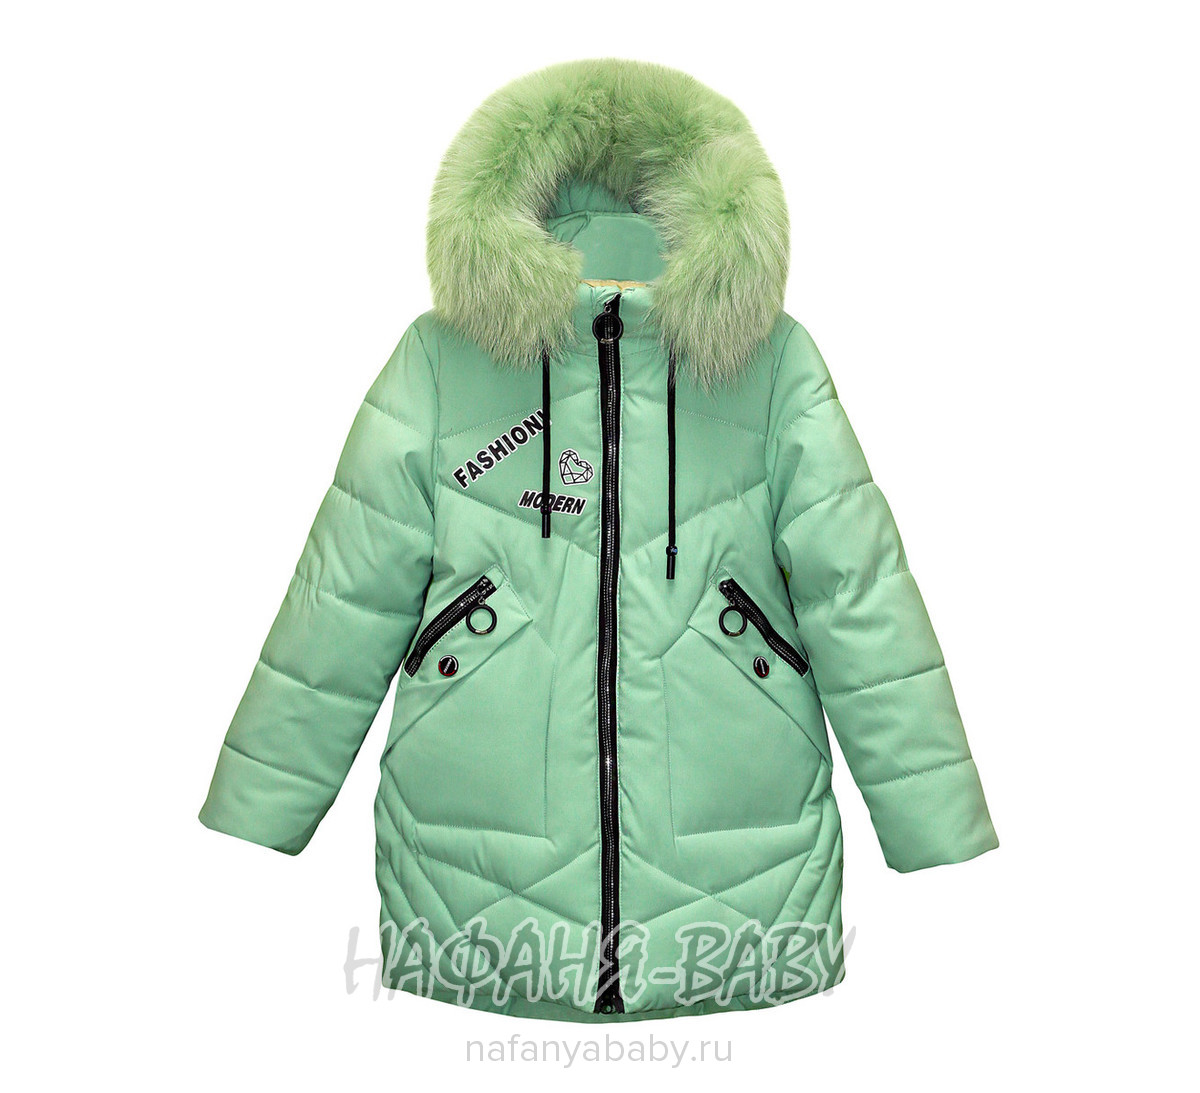 Зимняя удлиненная куртка для девочки YUE SHUN арт: 1515, 5-9 лет, оптом Китай (Пекин)